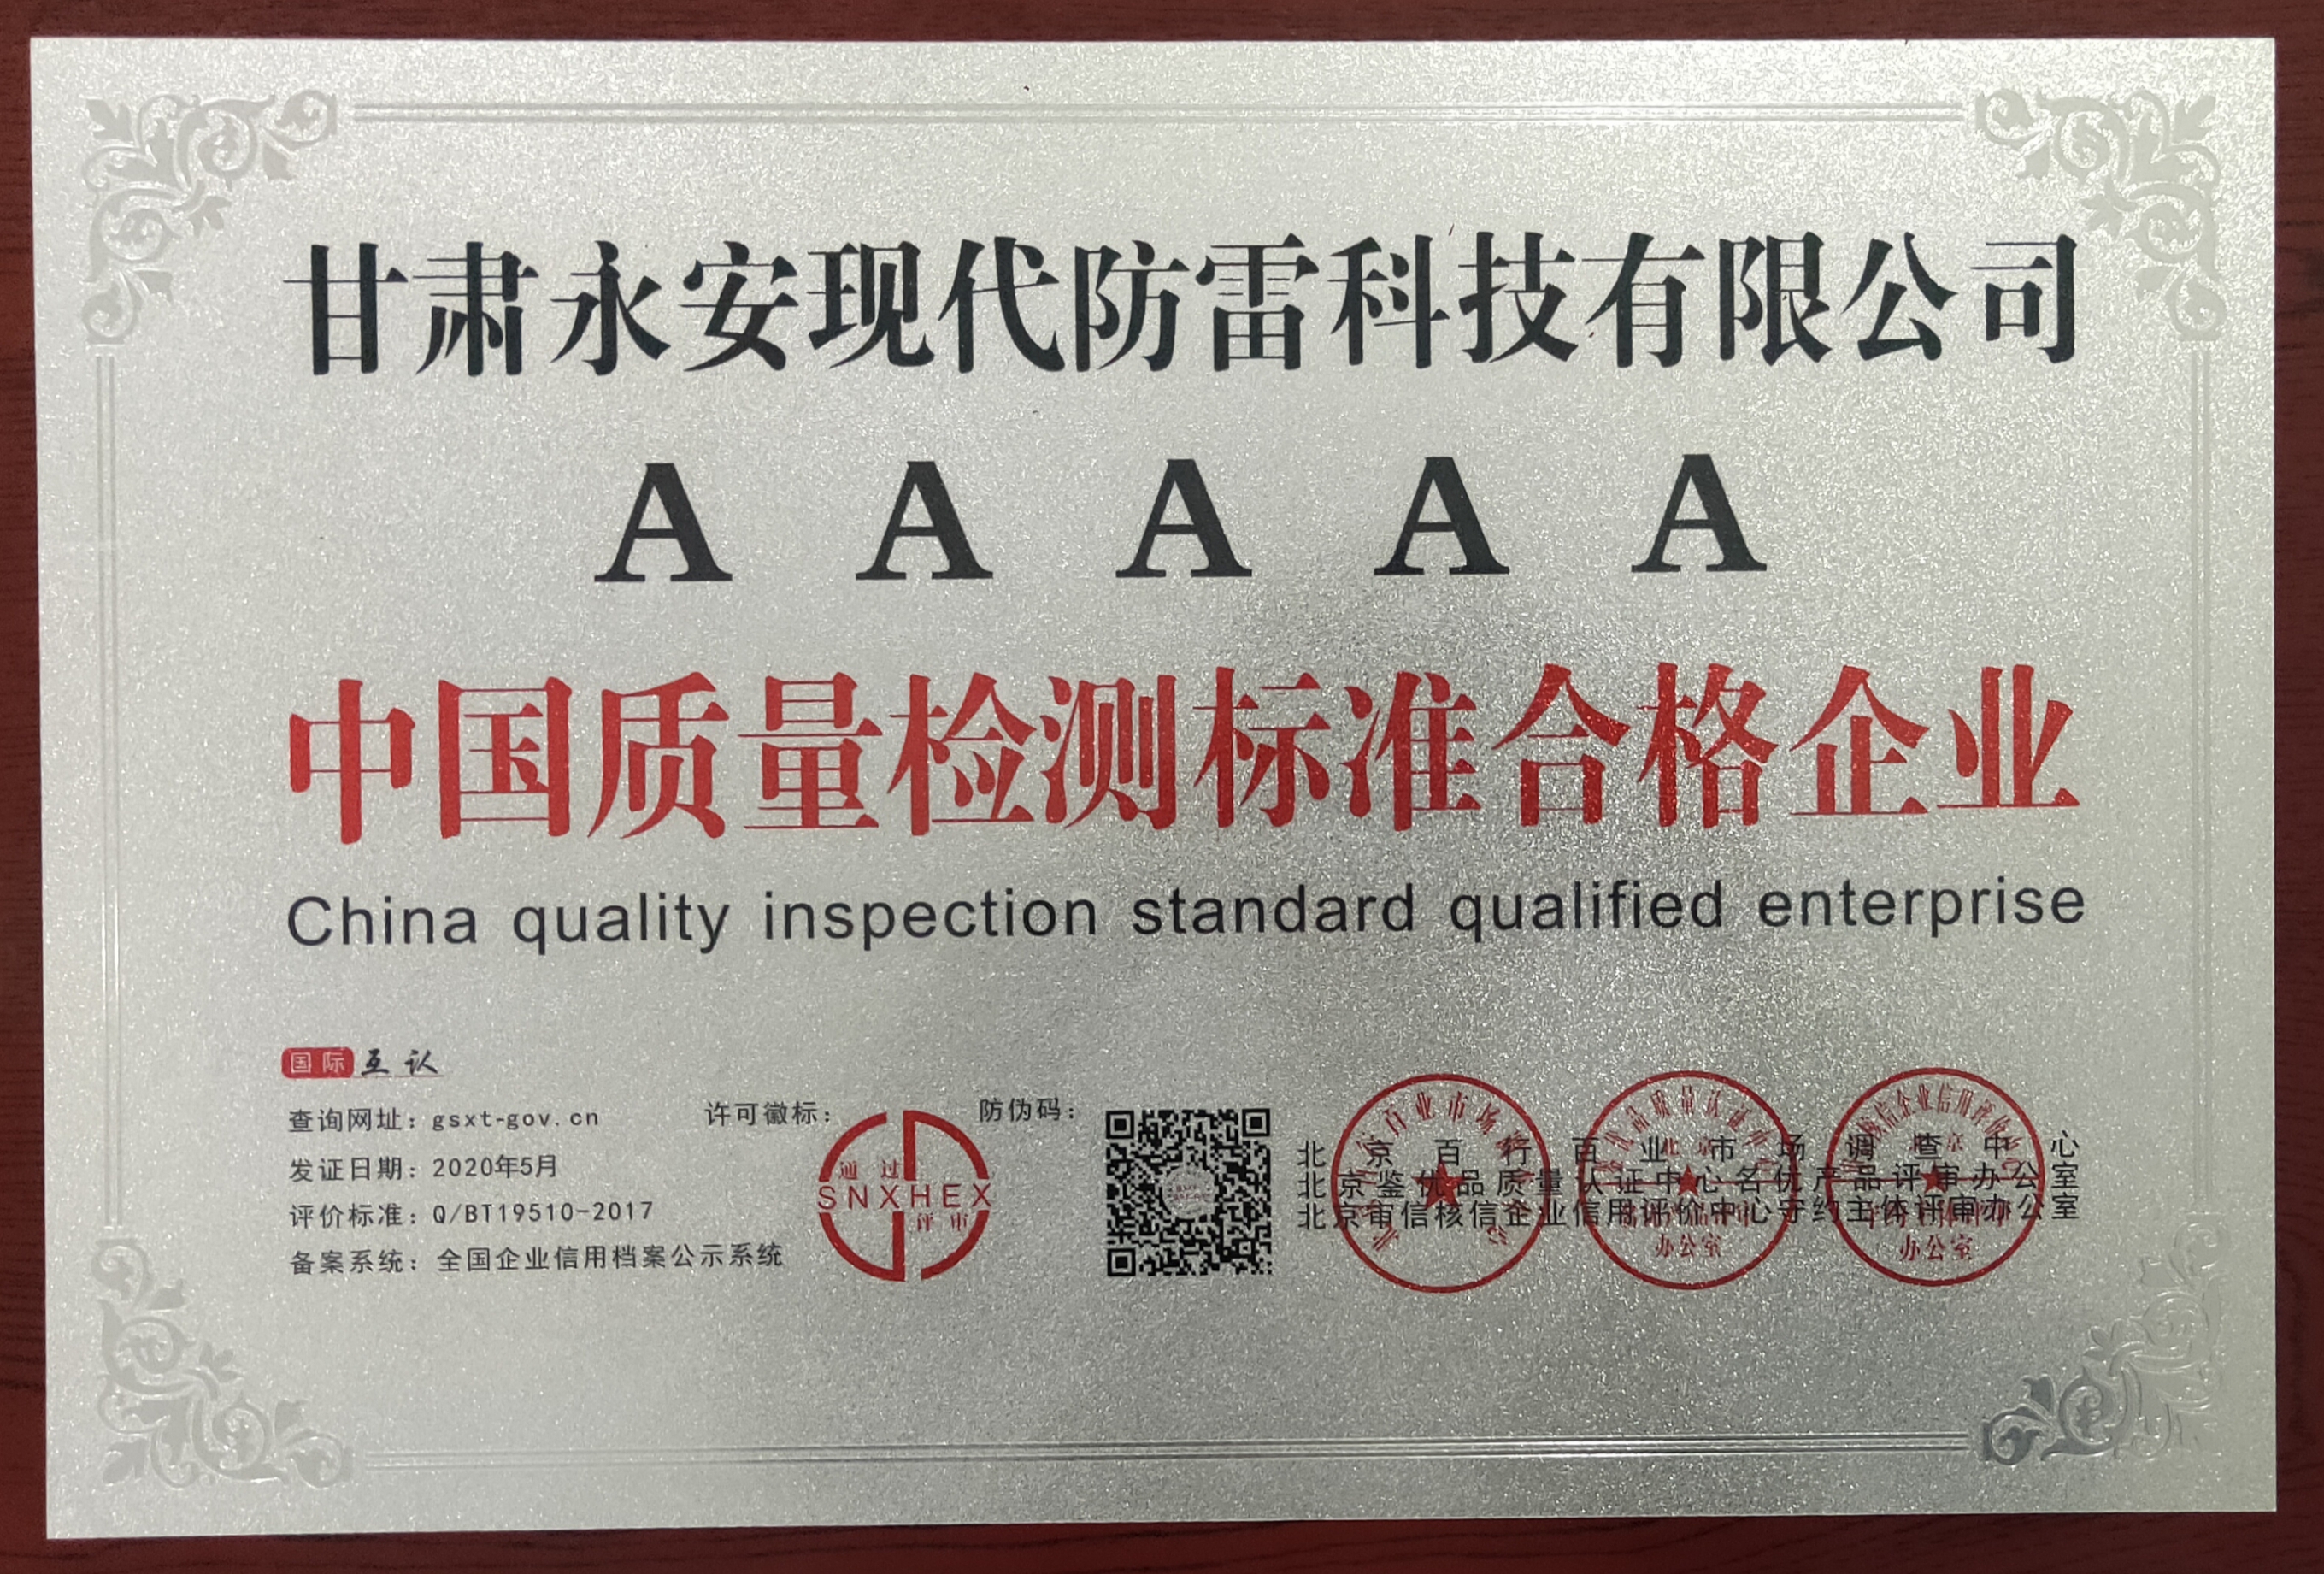 2020年05月我公司被评为“中国质量检测标准合格企业”